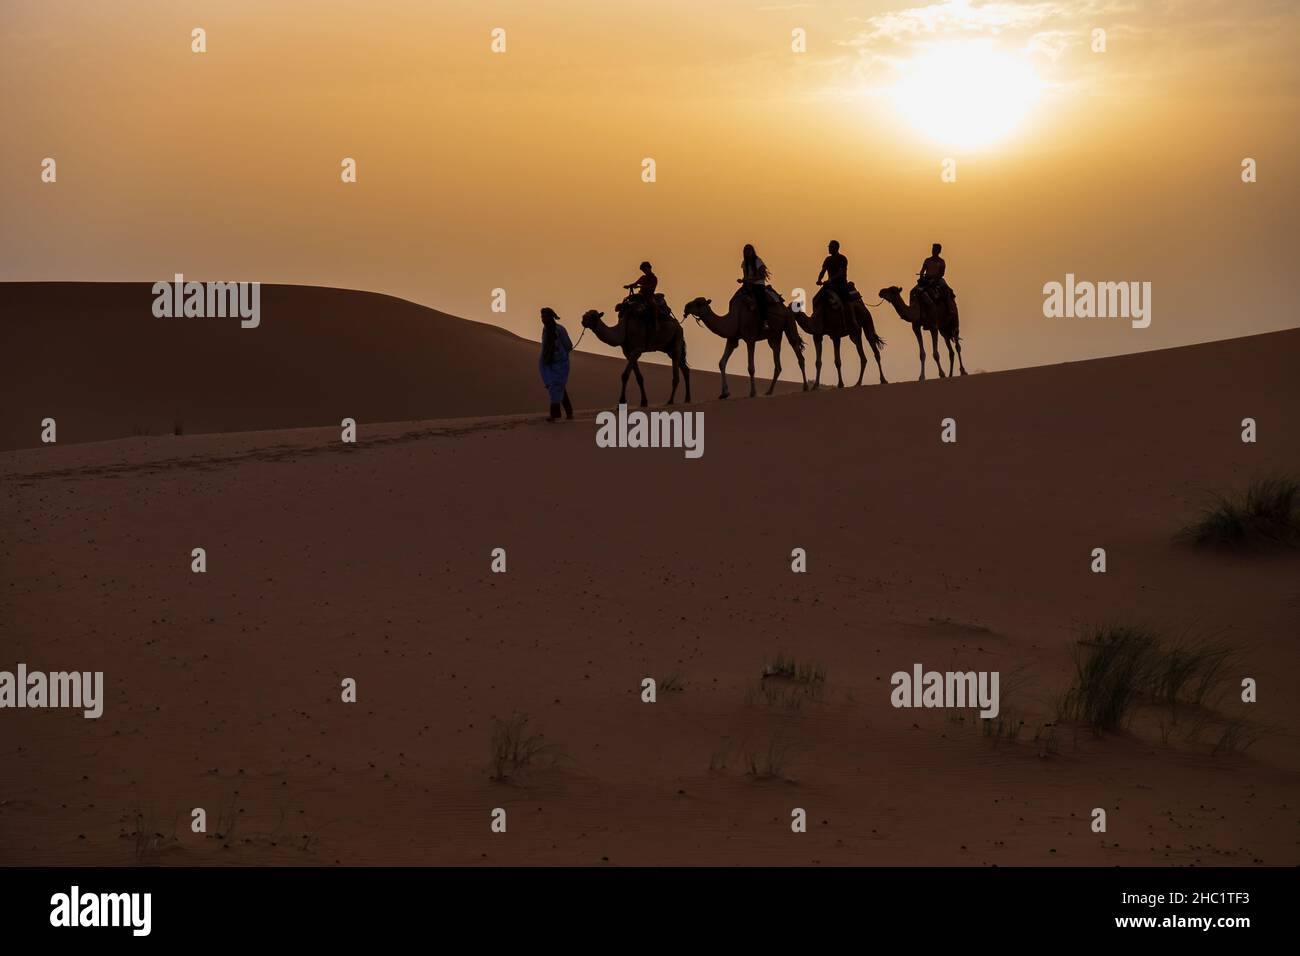 Sahara desert in Morocco Stock Photo